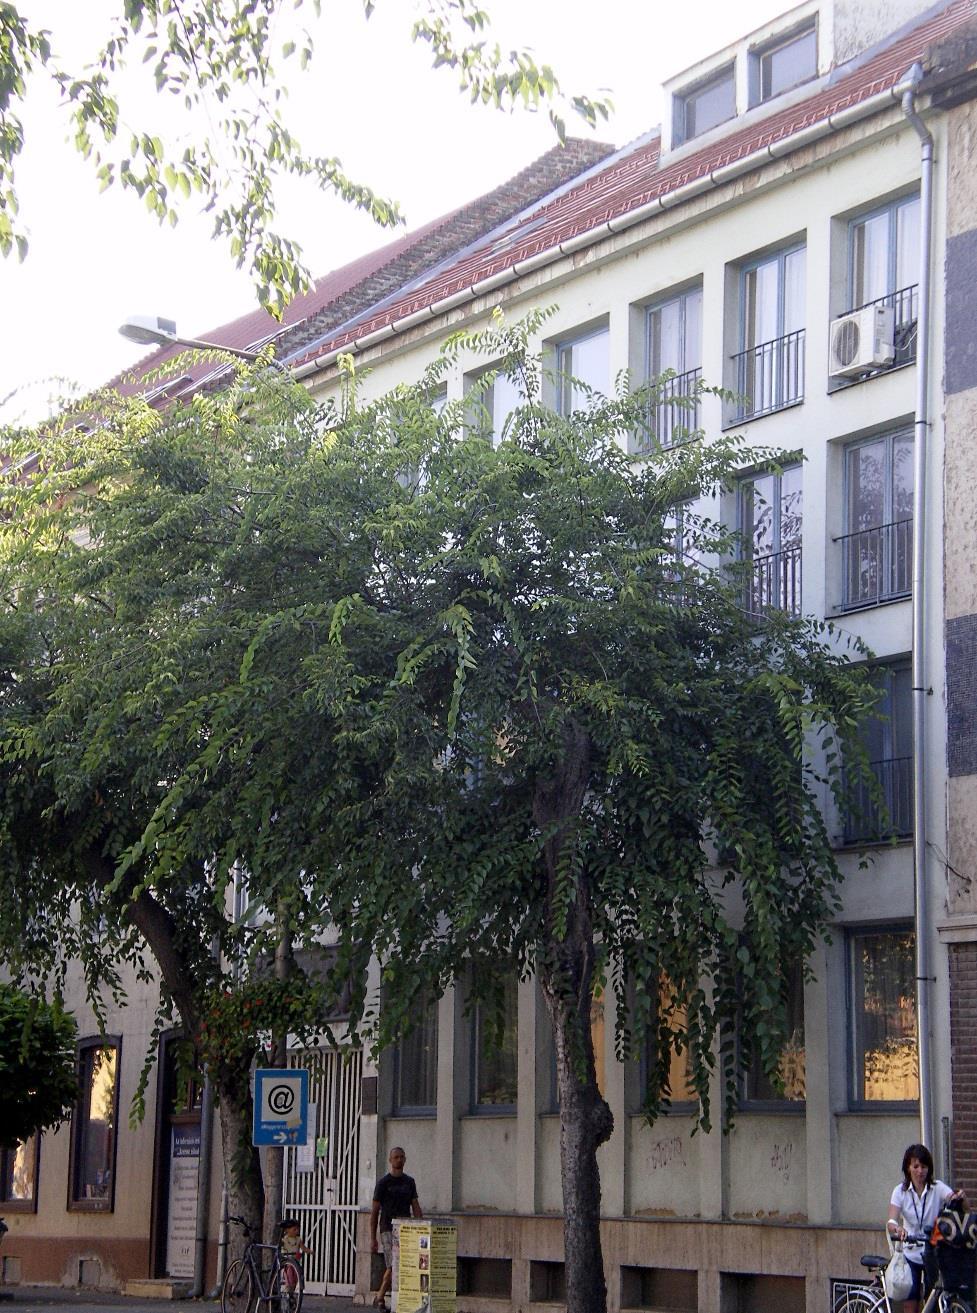 A Tolna Megyei Illyés Gyula Könyvtár, mint megyei hatókörű városi könyvtár szervezi a megye nemzeti és etnikai kisebbségekhez tartozó lakosainak könyvtári ellátását, közvetítő szerepet tölt be az